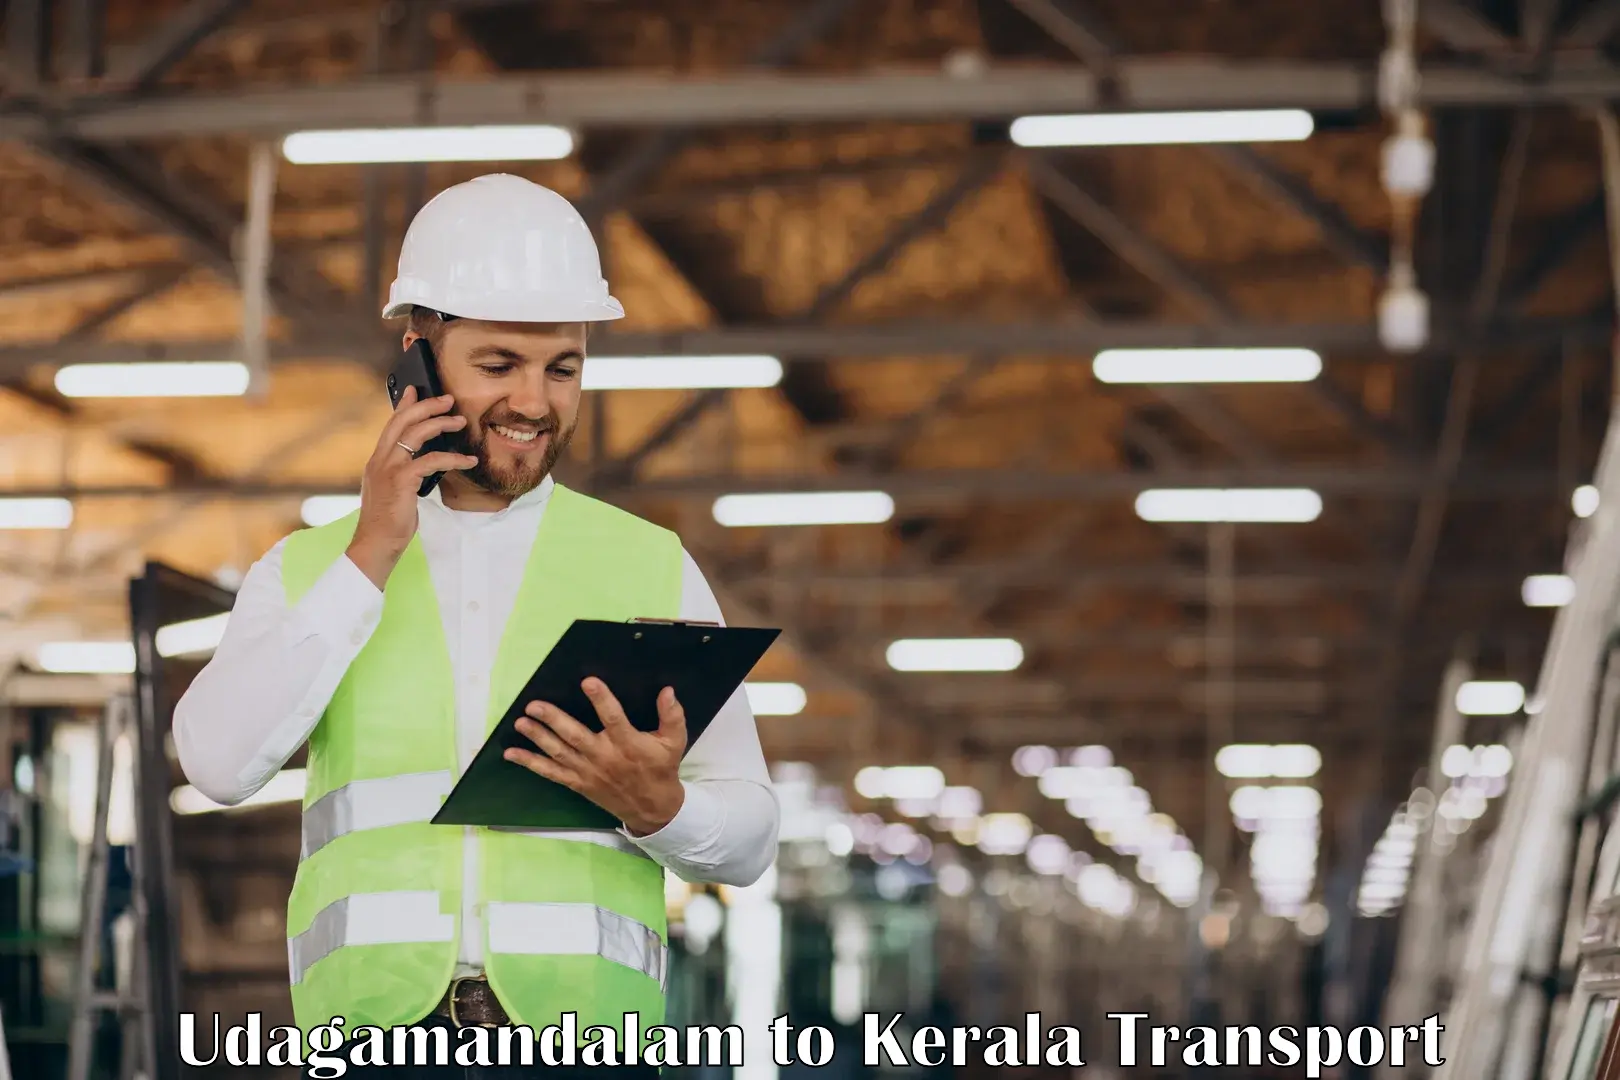 Transportation services Udagamandalam to Kerala